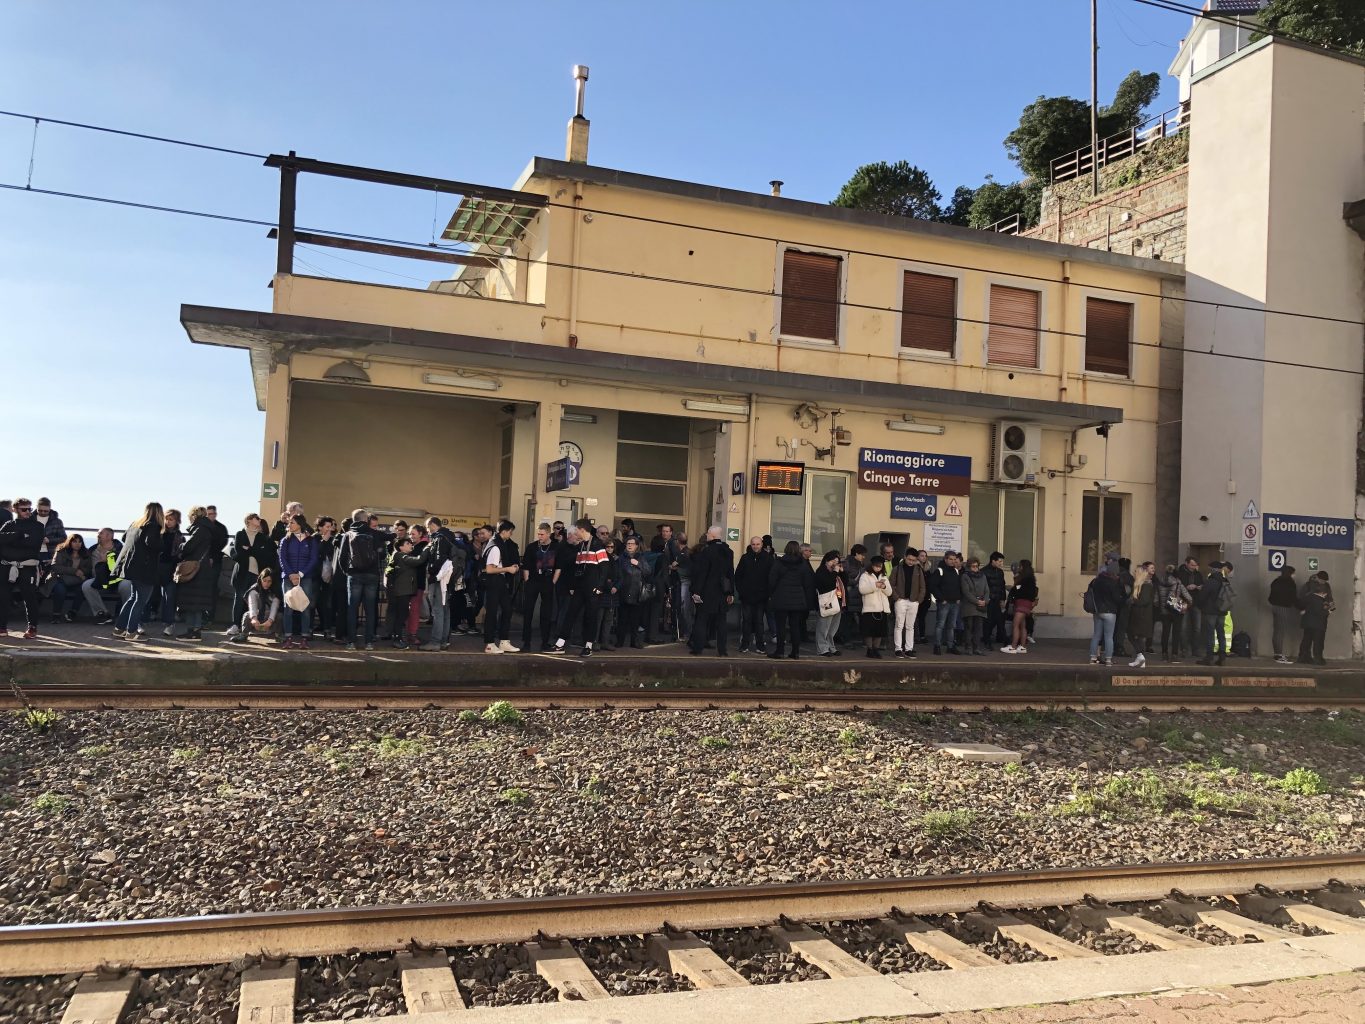 Estación de tren Riomaggiore